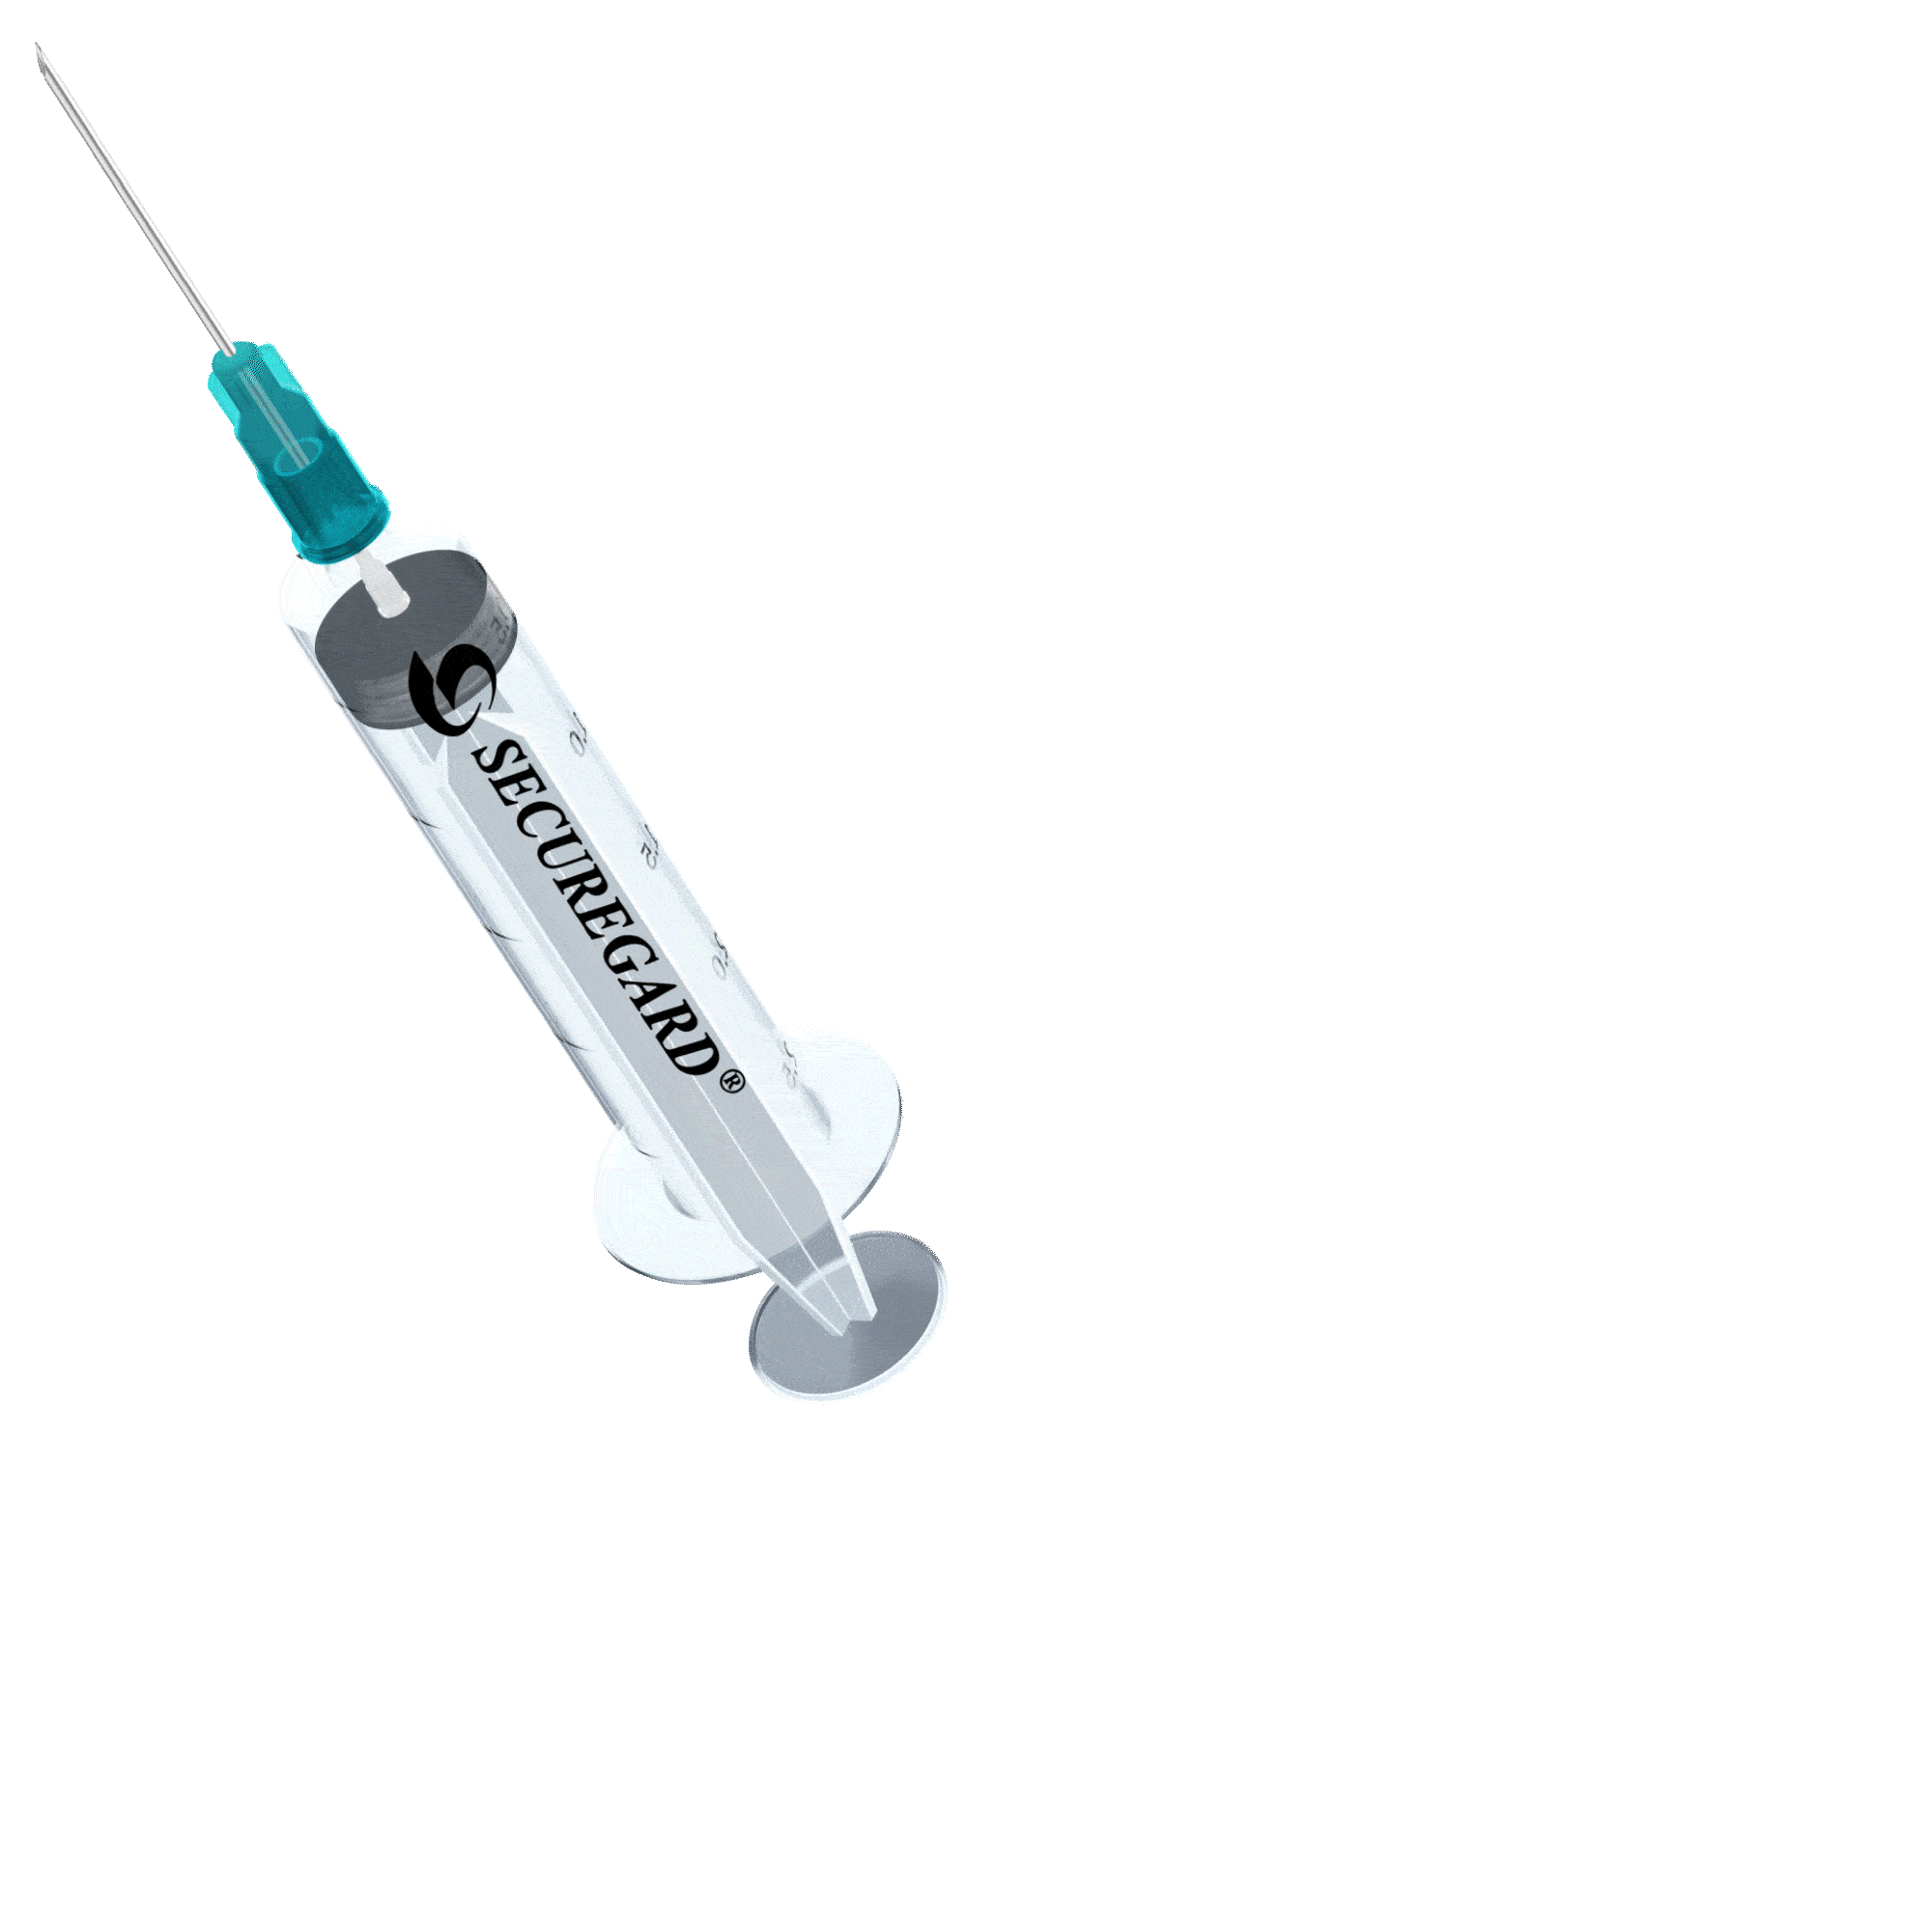 https://safegardmedical.com/wp-content/uploads/2023/03/Secureguard-Needle-Animated-c.gif